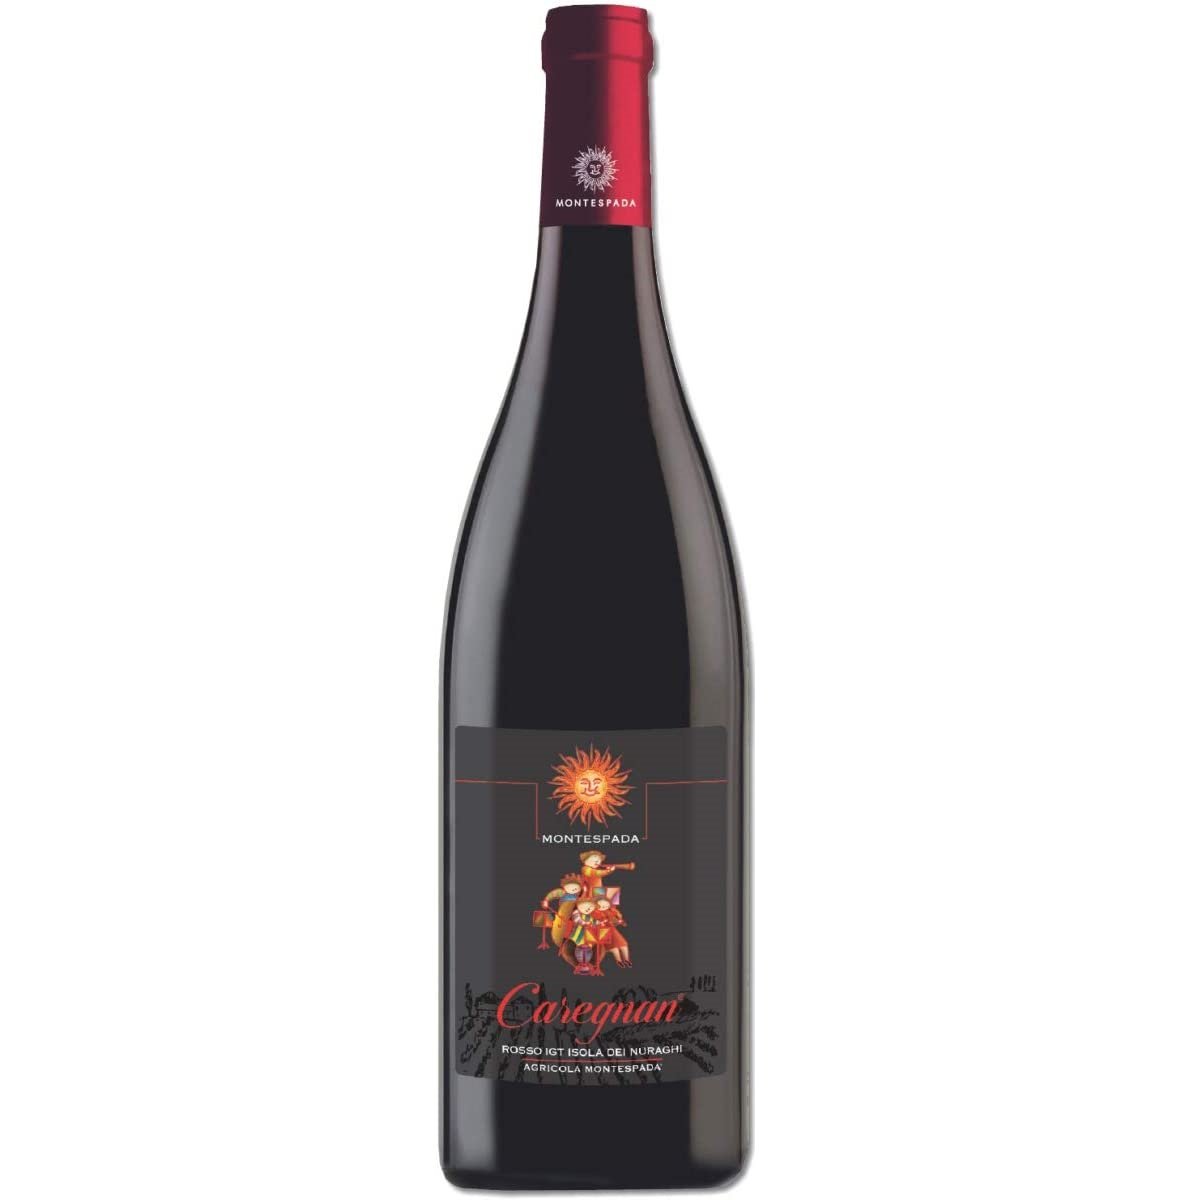 Вино Montespada Caregnan IGT 2016, красное, сухое, 13%, 0,75 л - фото 1